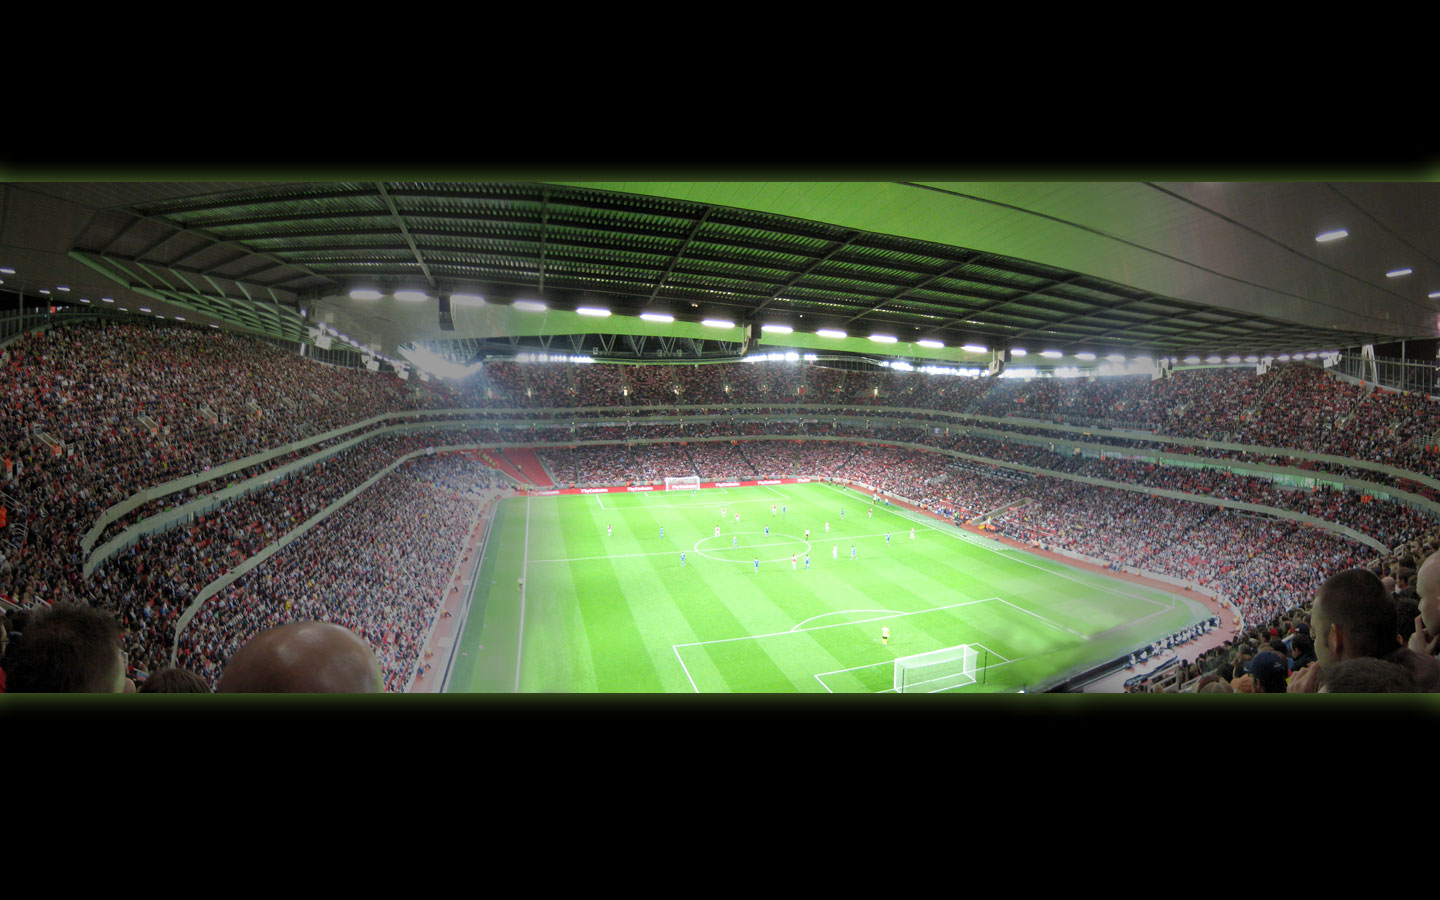 Arsenal Emirates Stadium by nawaz83 on DeviantArt